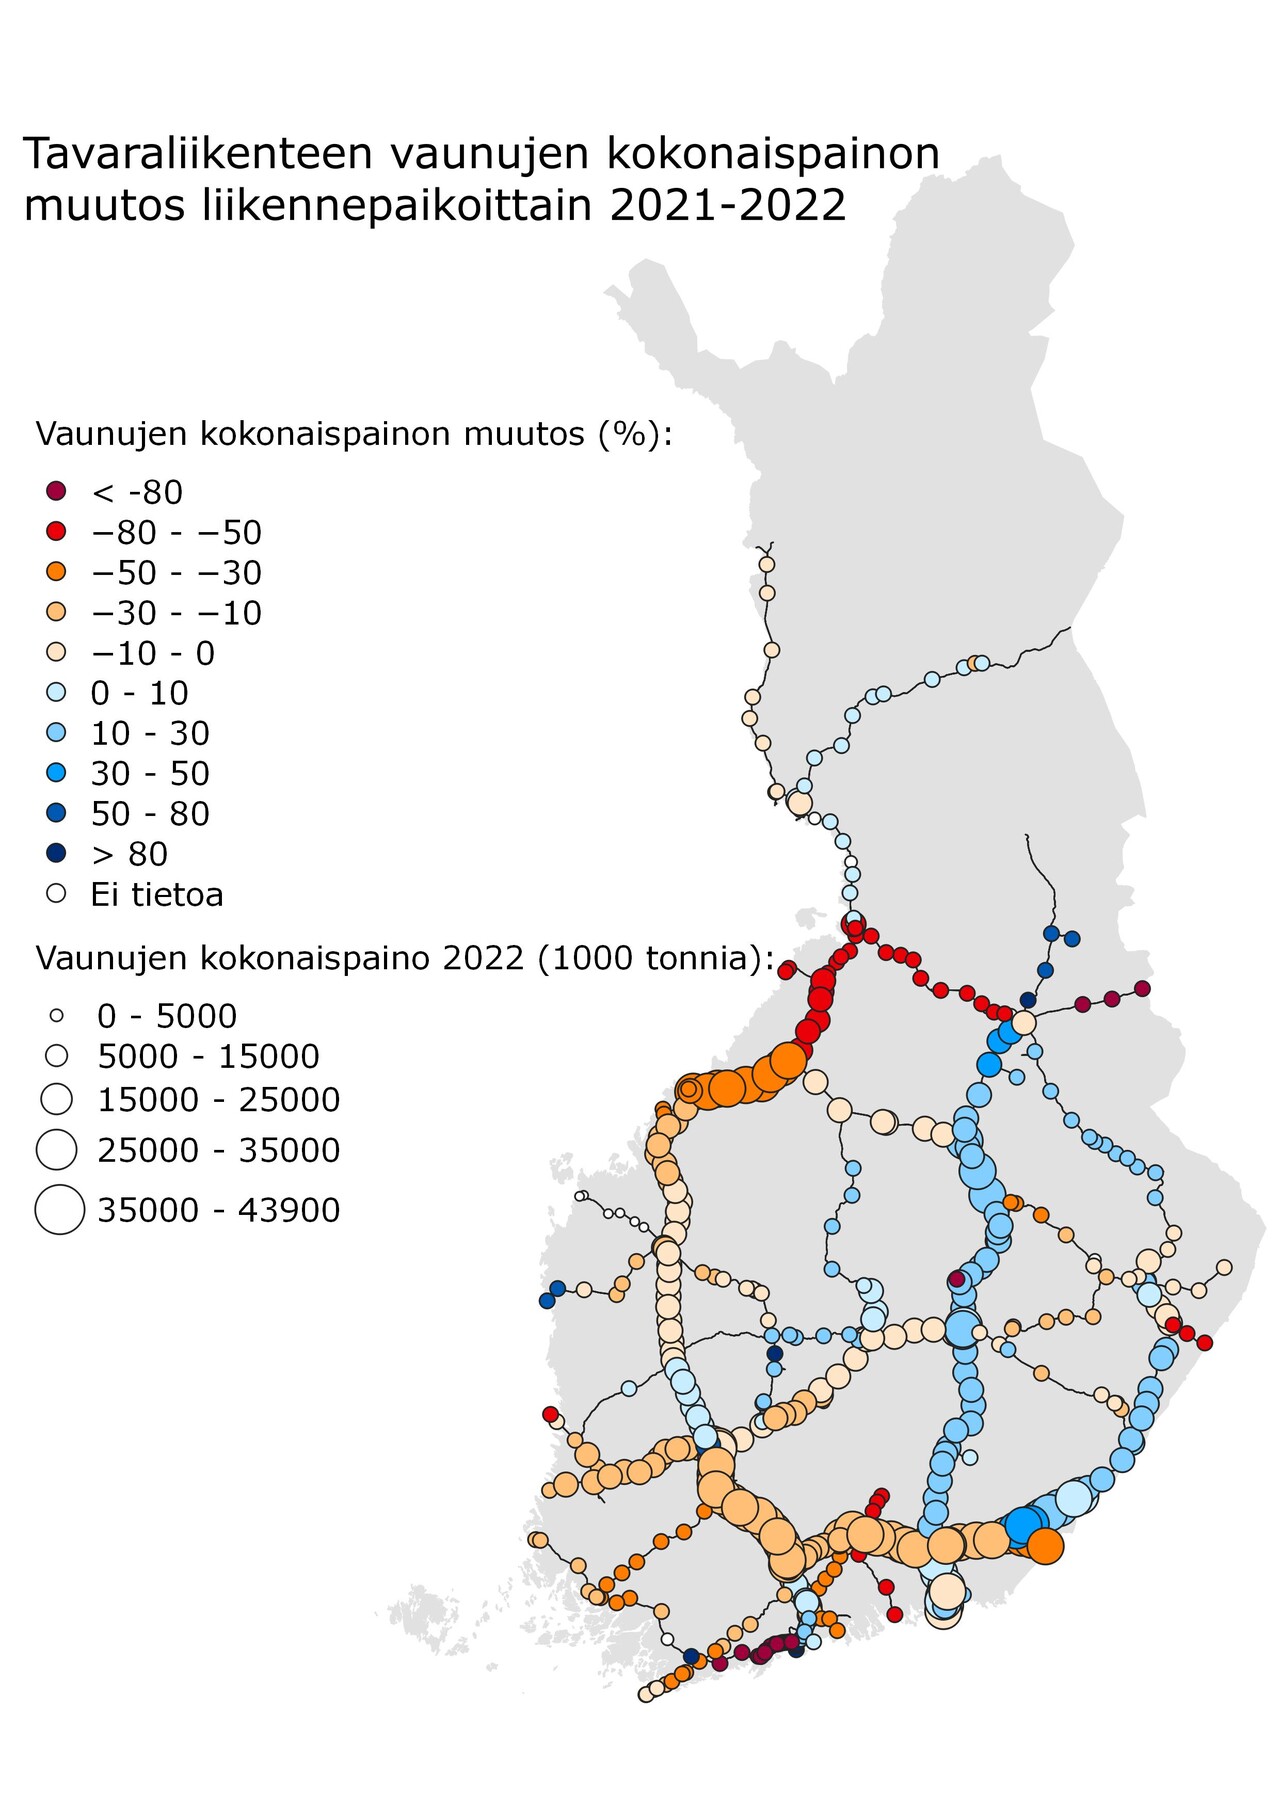 Suomen kartalla esitetty tavaraliikenteen vaunujen kokonaispainon muutos liikennepaikoittain vuosina 2021 - 2022.